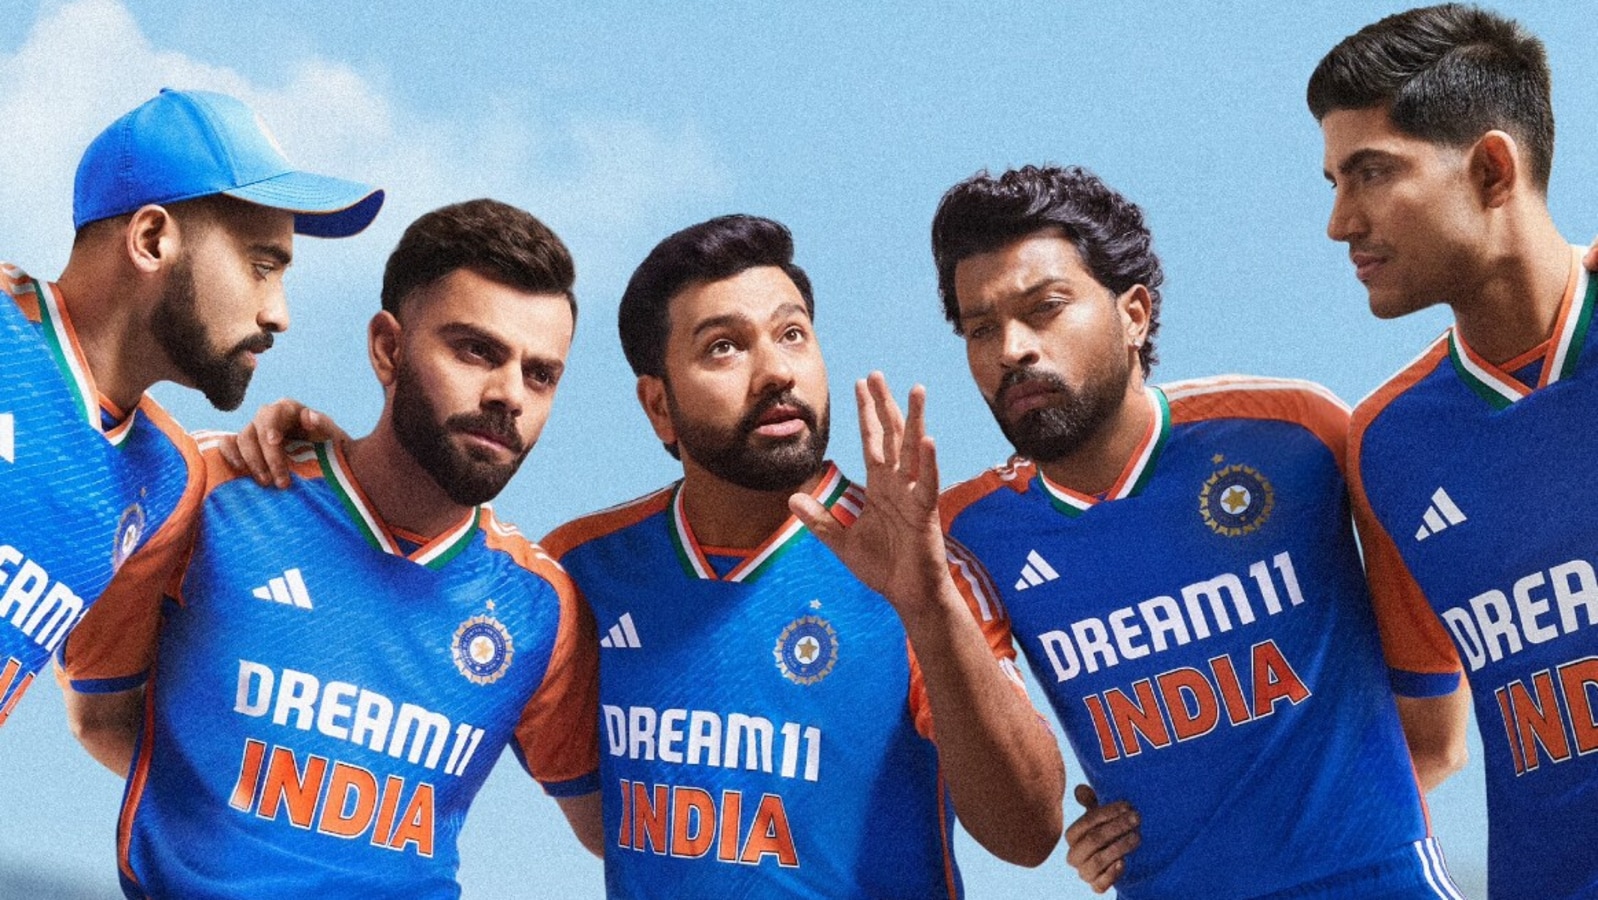 Ile kosztuje nowo wprowadzona koszulka Team India T20 World Cup?  Kiedy i gdzie to kupić